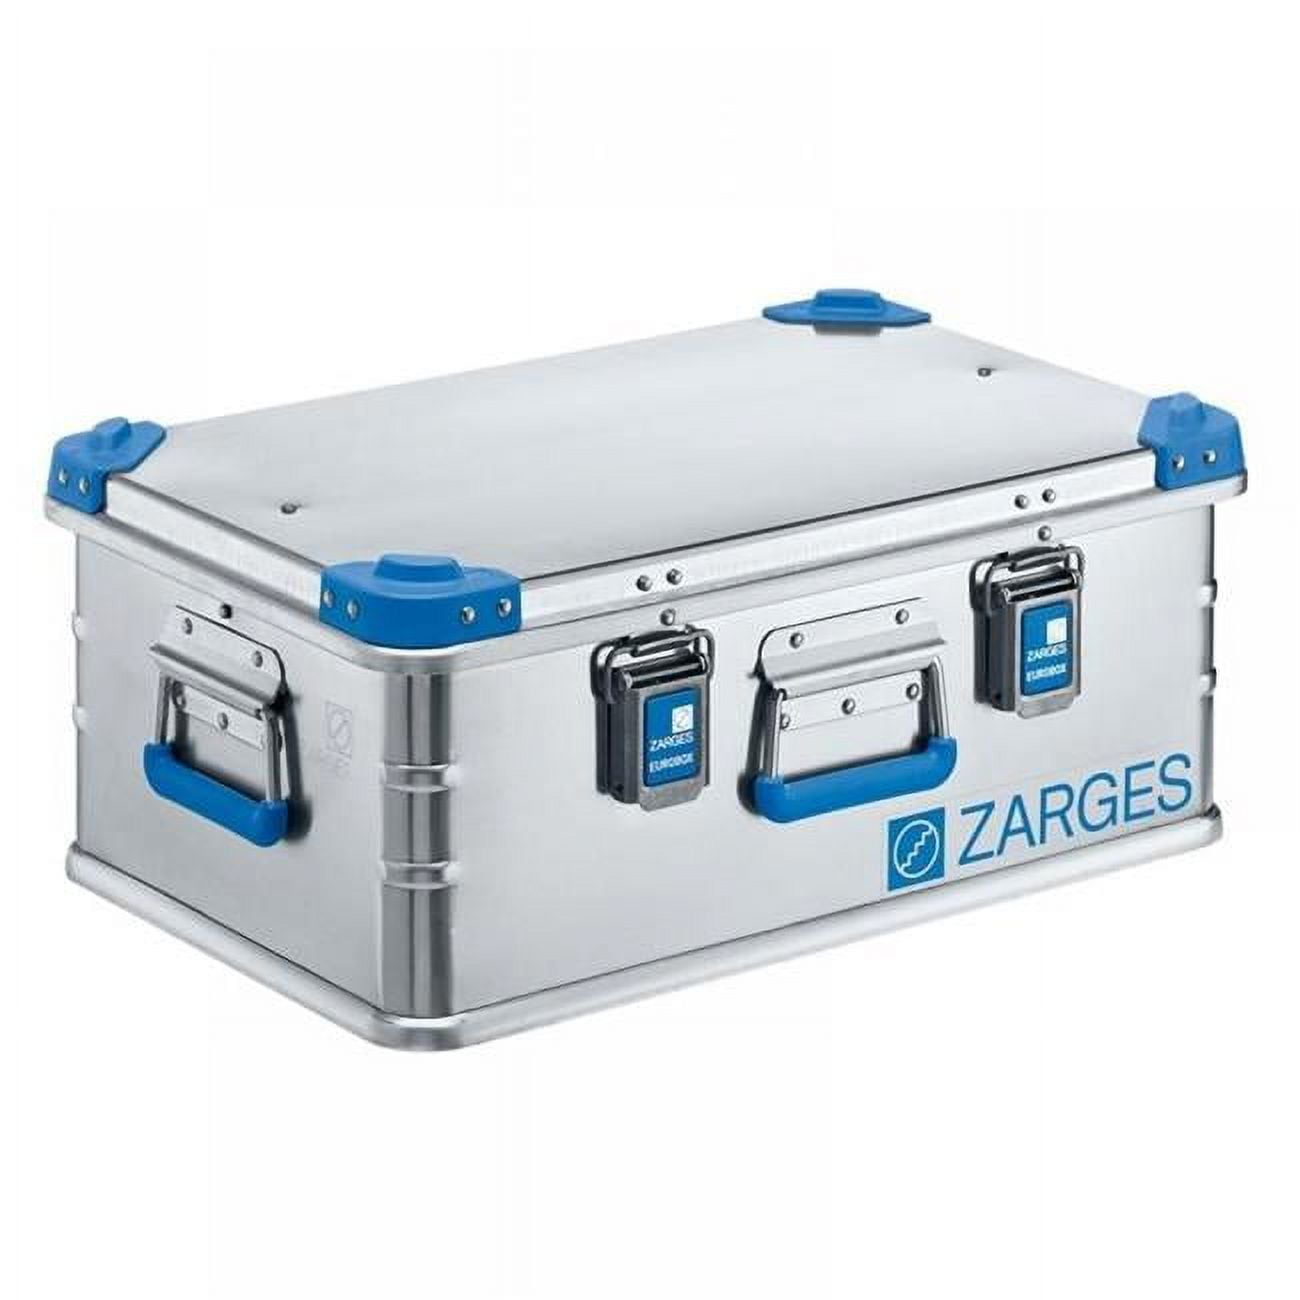 Zarges ZAR-40701 22.95 x 15.28 x 9.72 in. Eurobox Equipment Case 